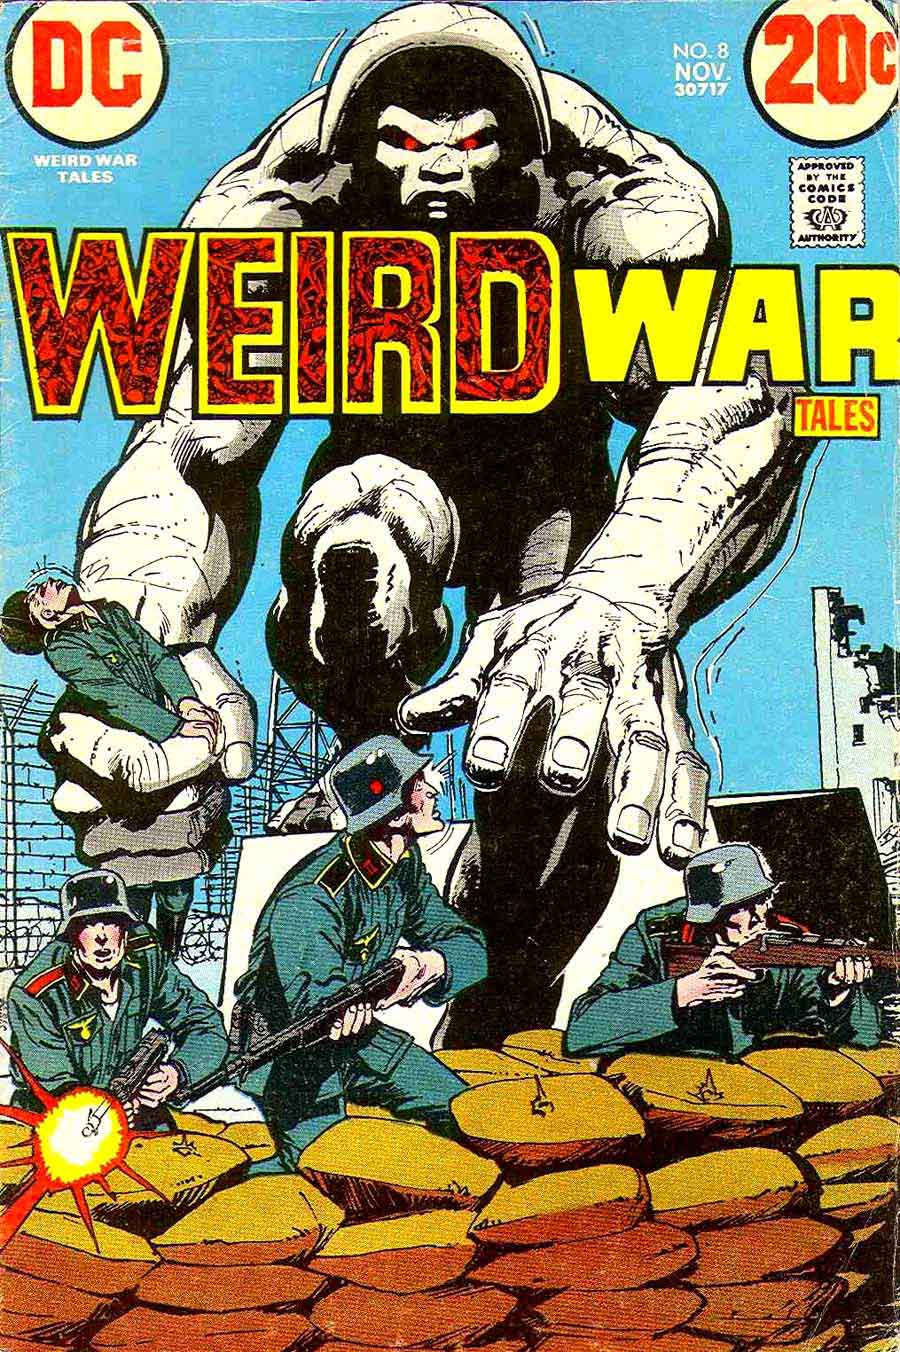 Weird War Tales v1 #8 dc bronze age comic book cover art by Neal Adams